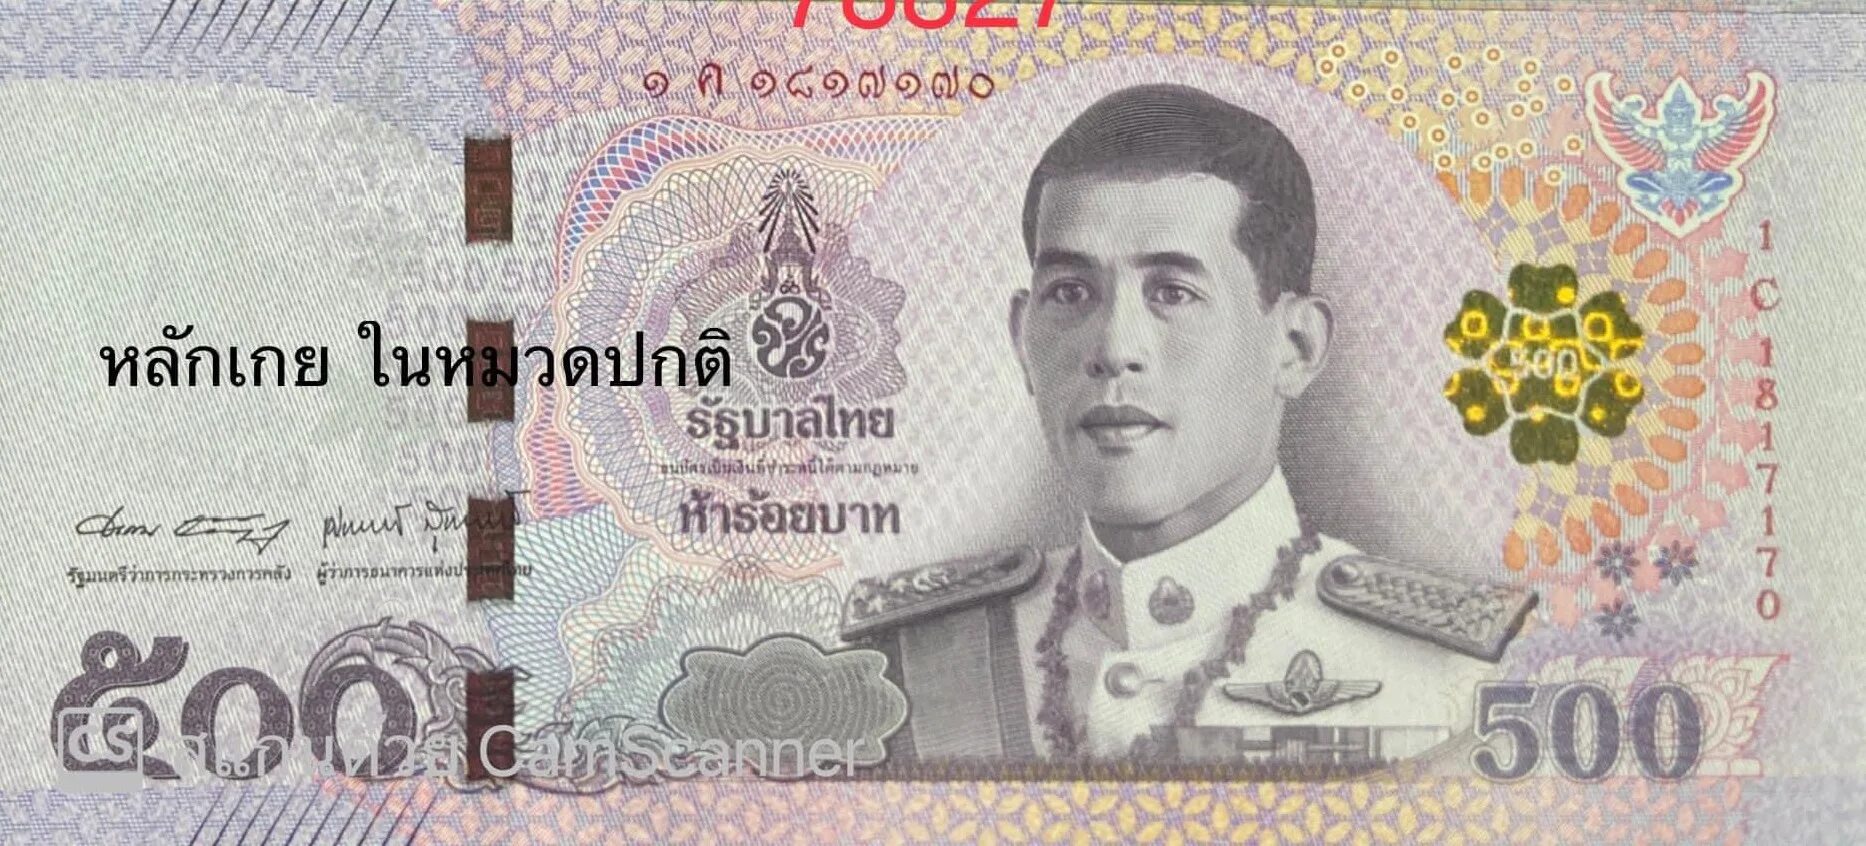 500 бат. Банкноты Таиланда 500 бат. Тайланд банкнота 500 бат. Купюра 500 бат. Тайские купюры 500 Батов.